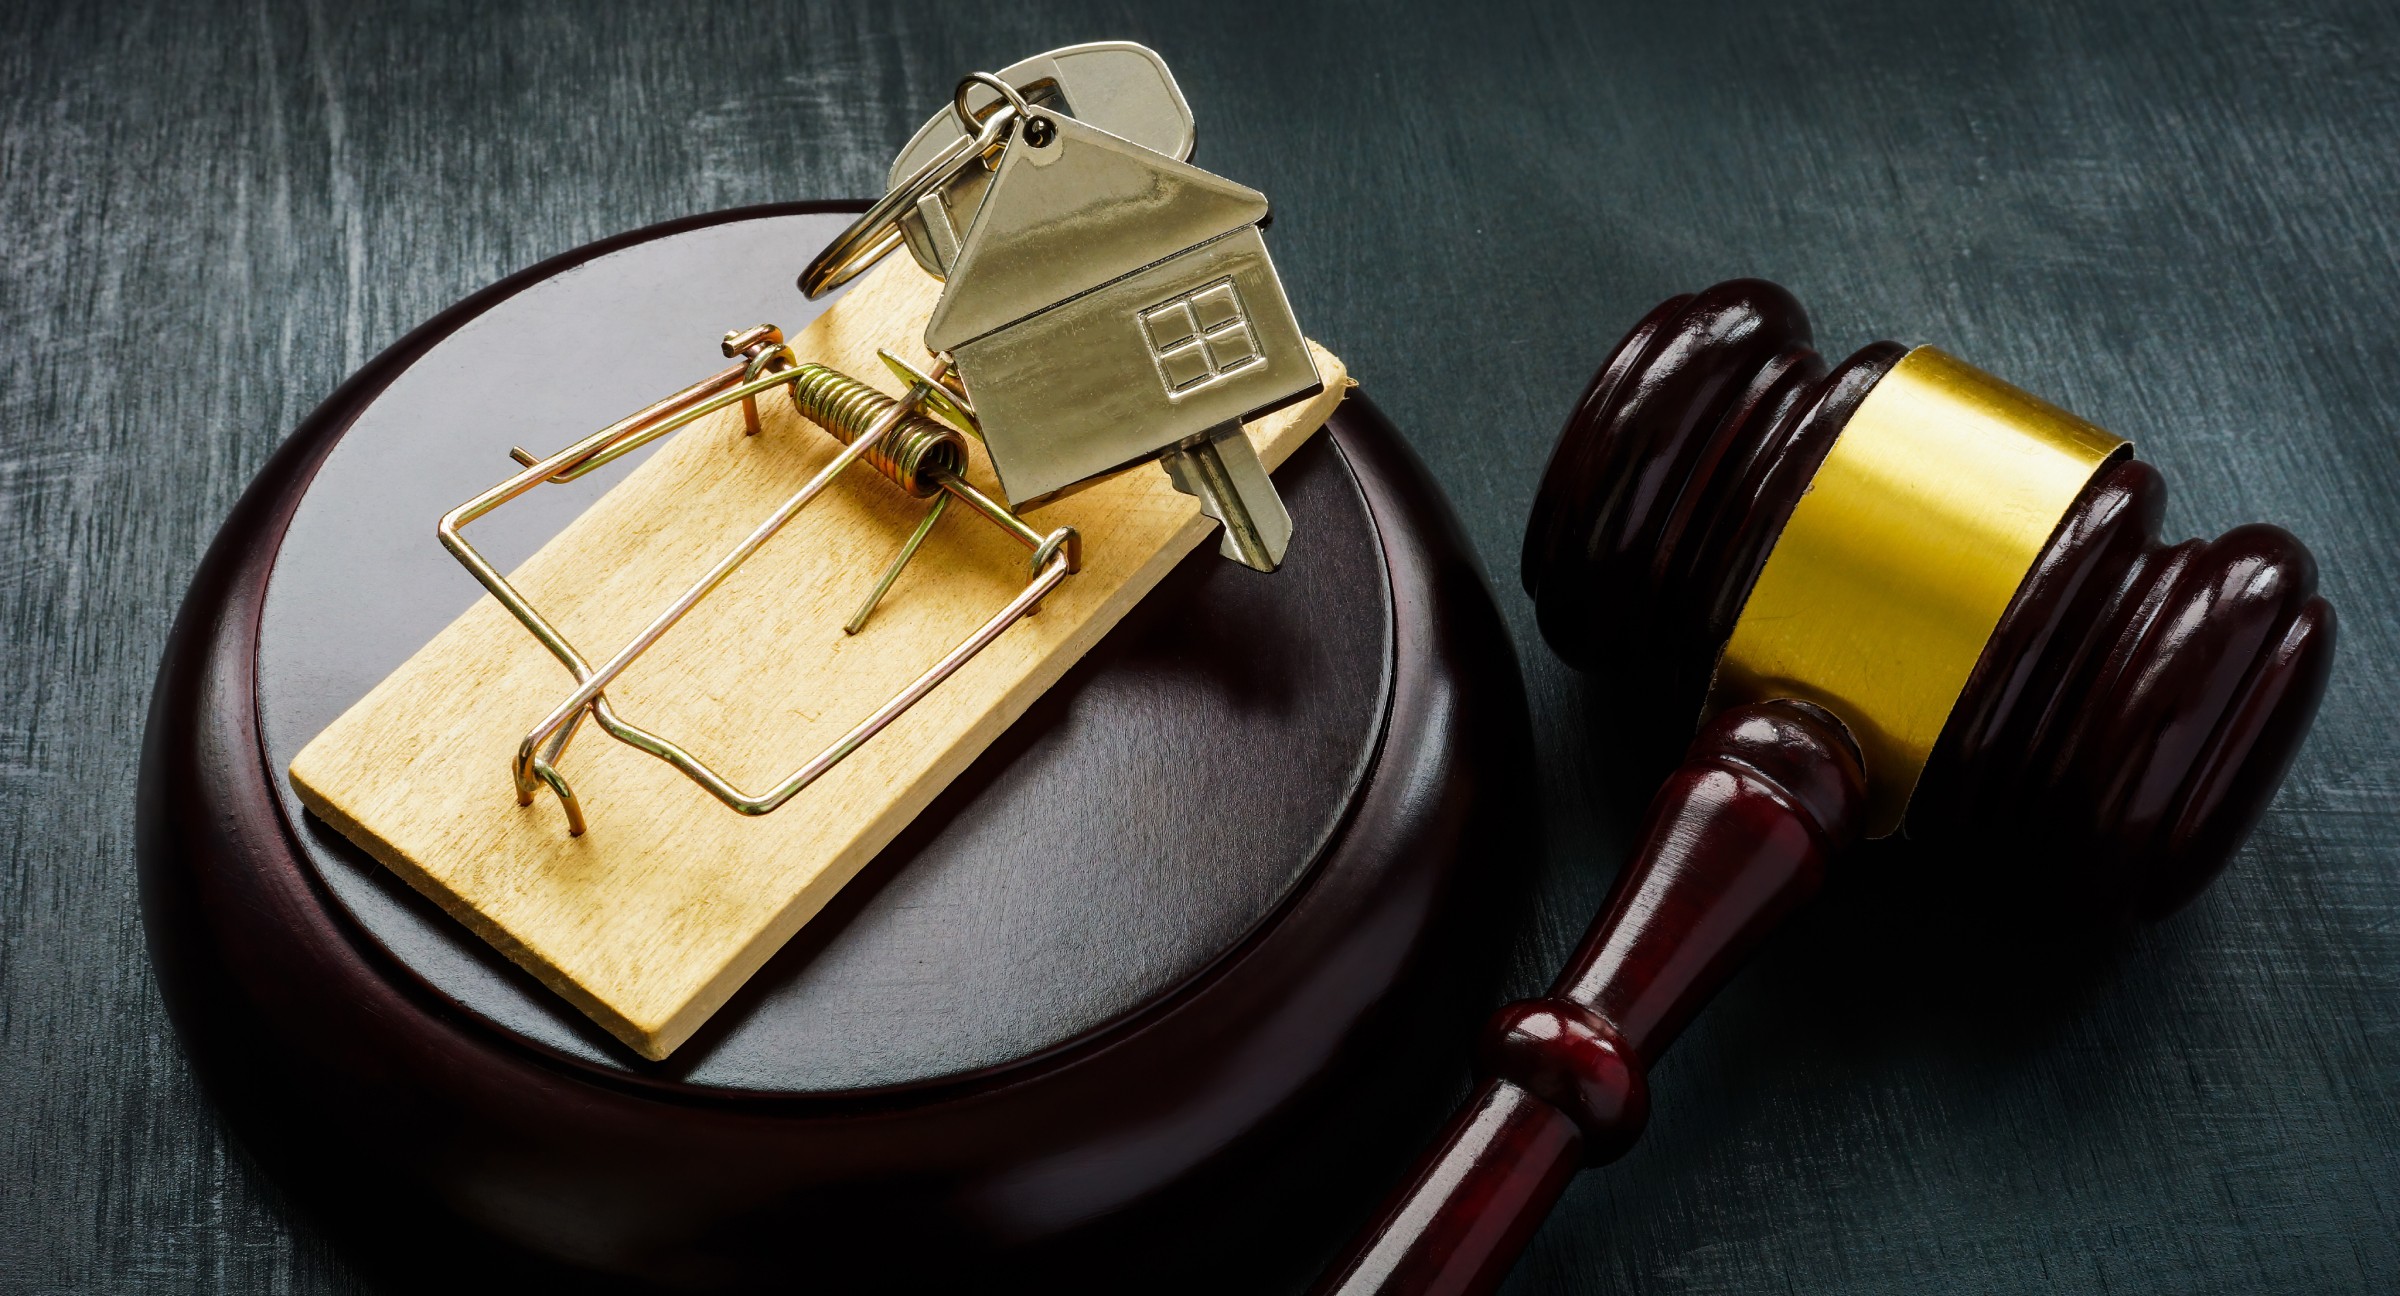 real estate fraud investigator for litigation